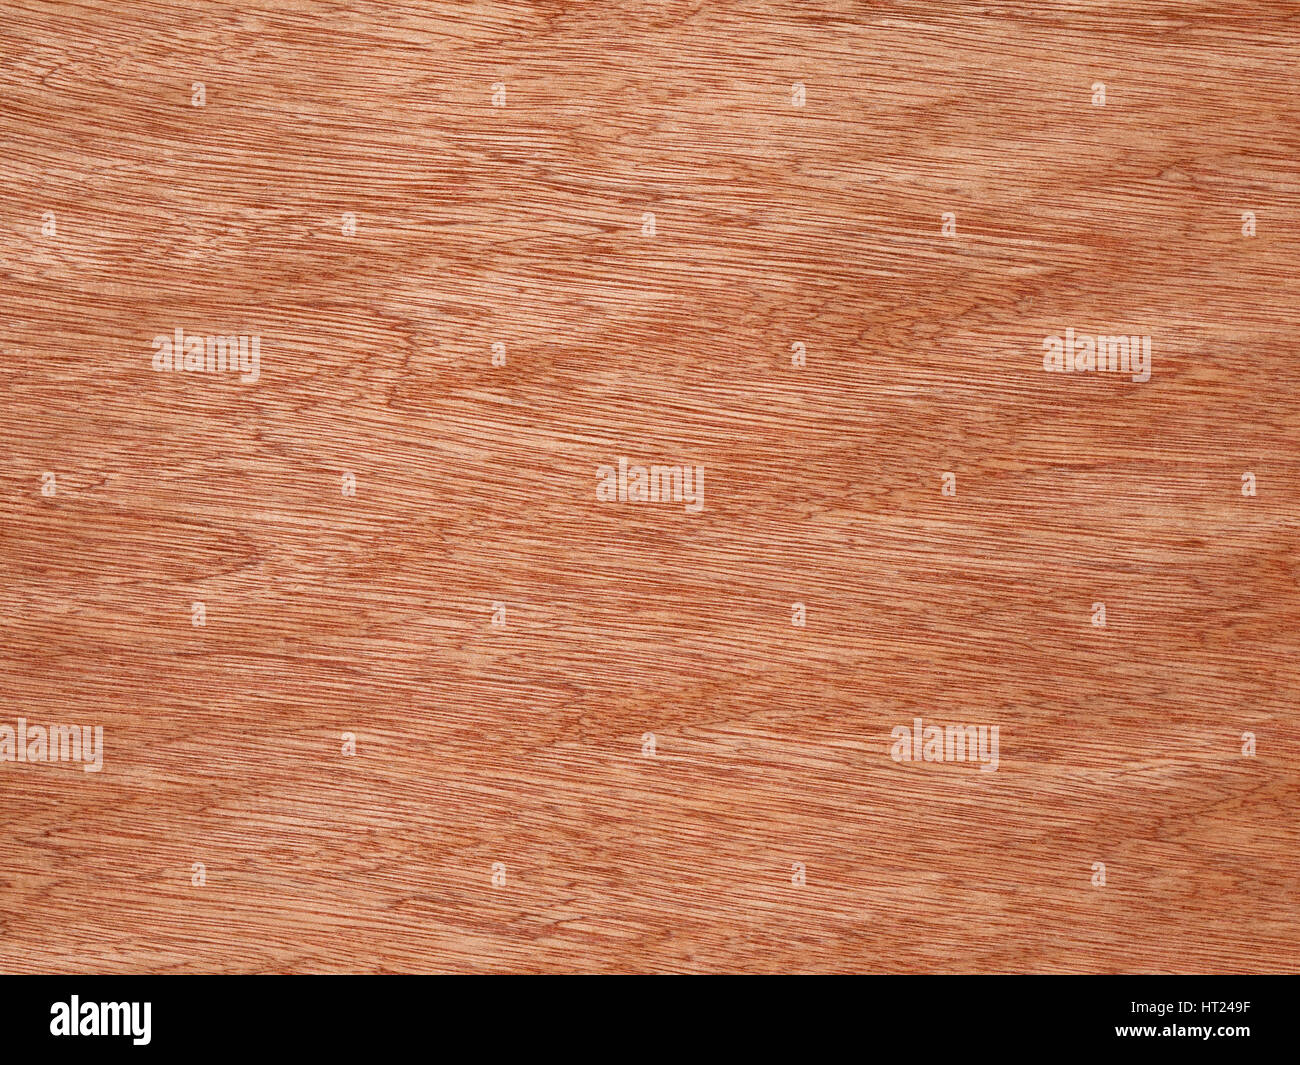 Orange color wood grain texture surface detail. Stock Photo